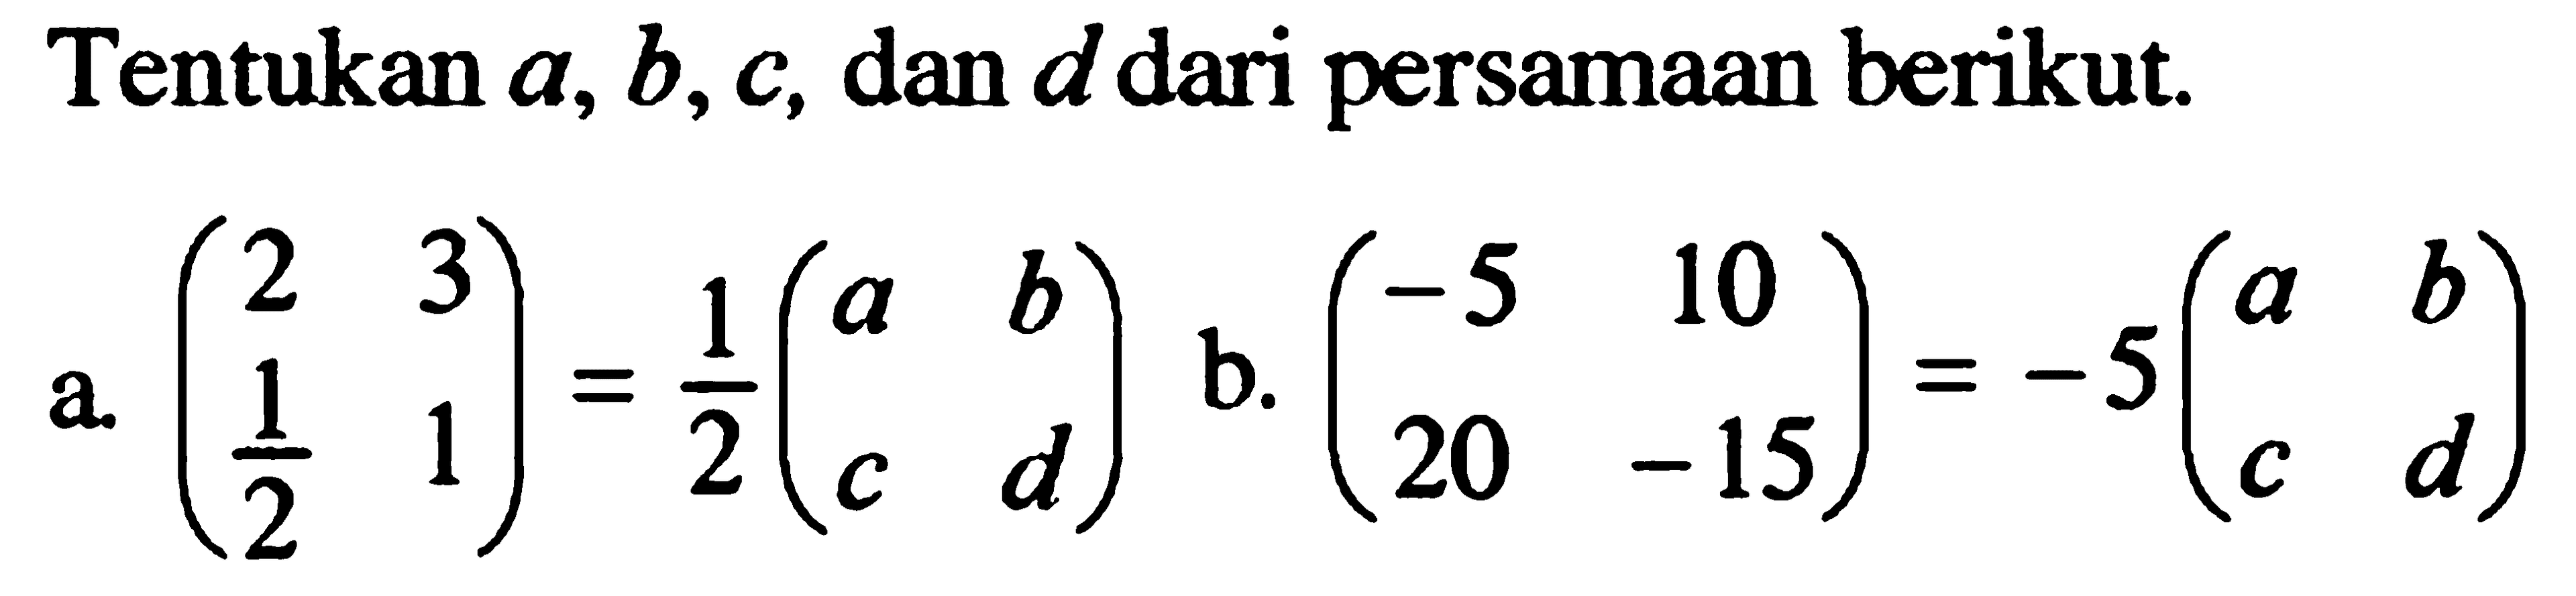 Tentukan a, b, c, dan d dari persamaan berikut. a. (2 3 1/2 1)=1/2(a b c d) b. (-5 10 20 -15)=-5(a b c d)